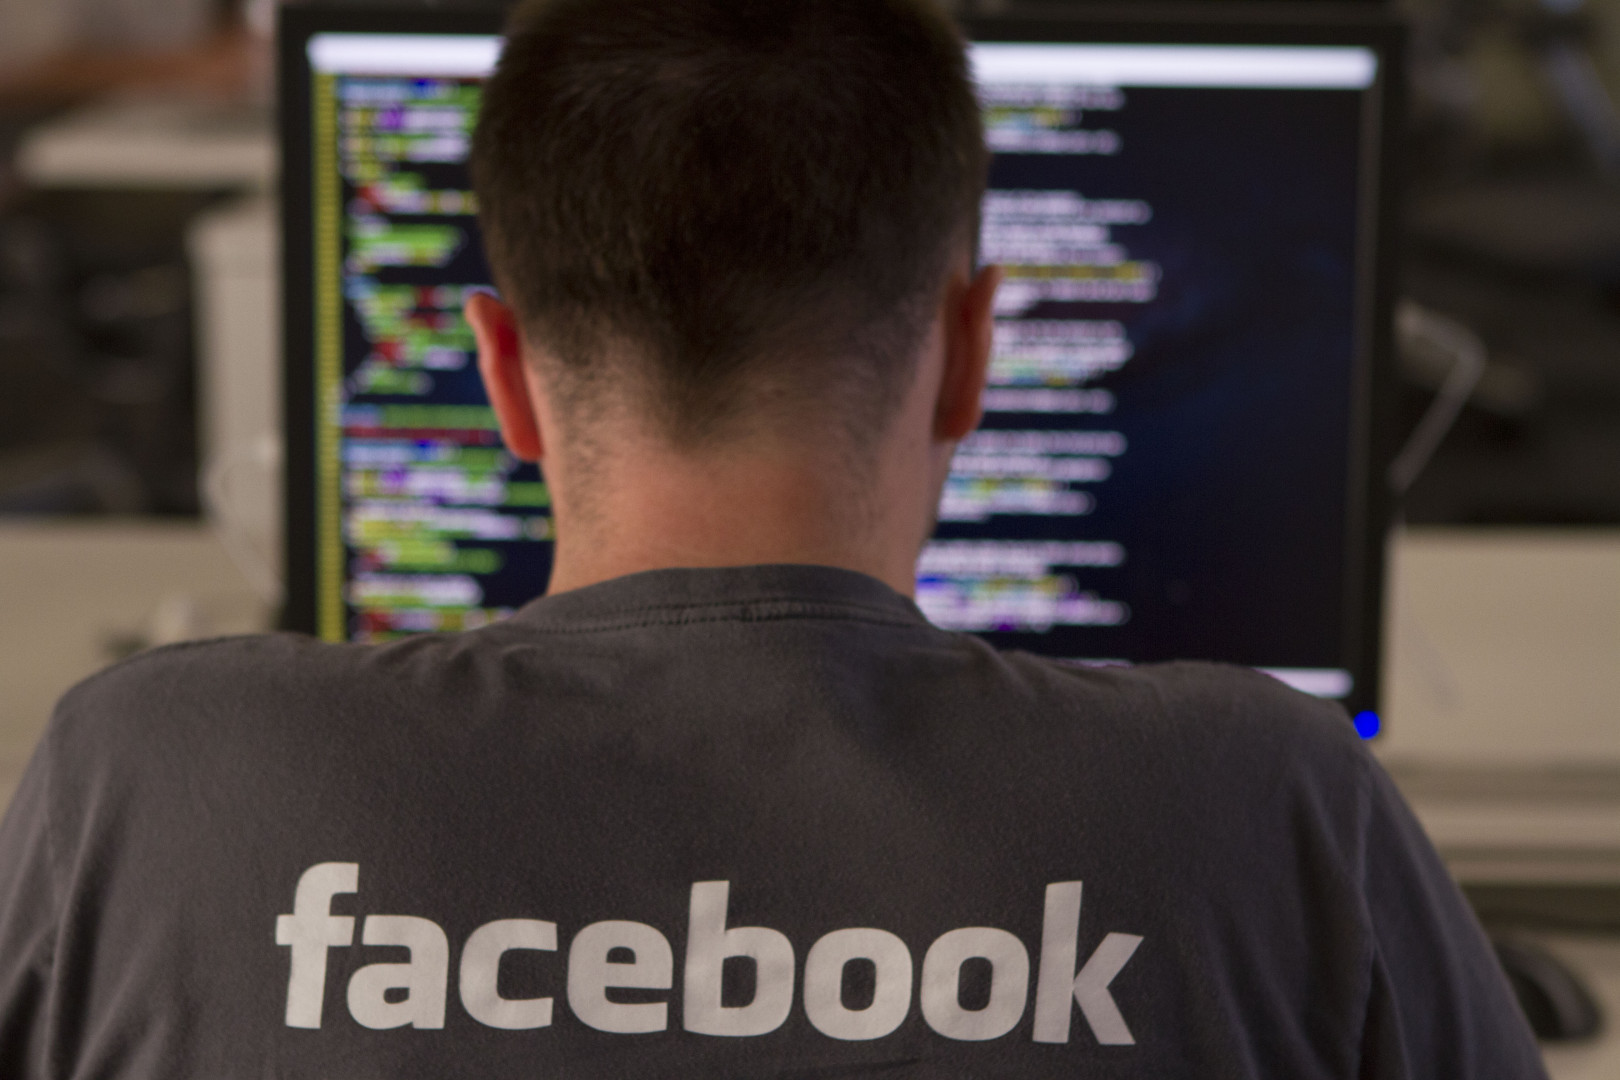 Facebook decide restringir (mas não proibir) testes de personalidade